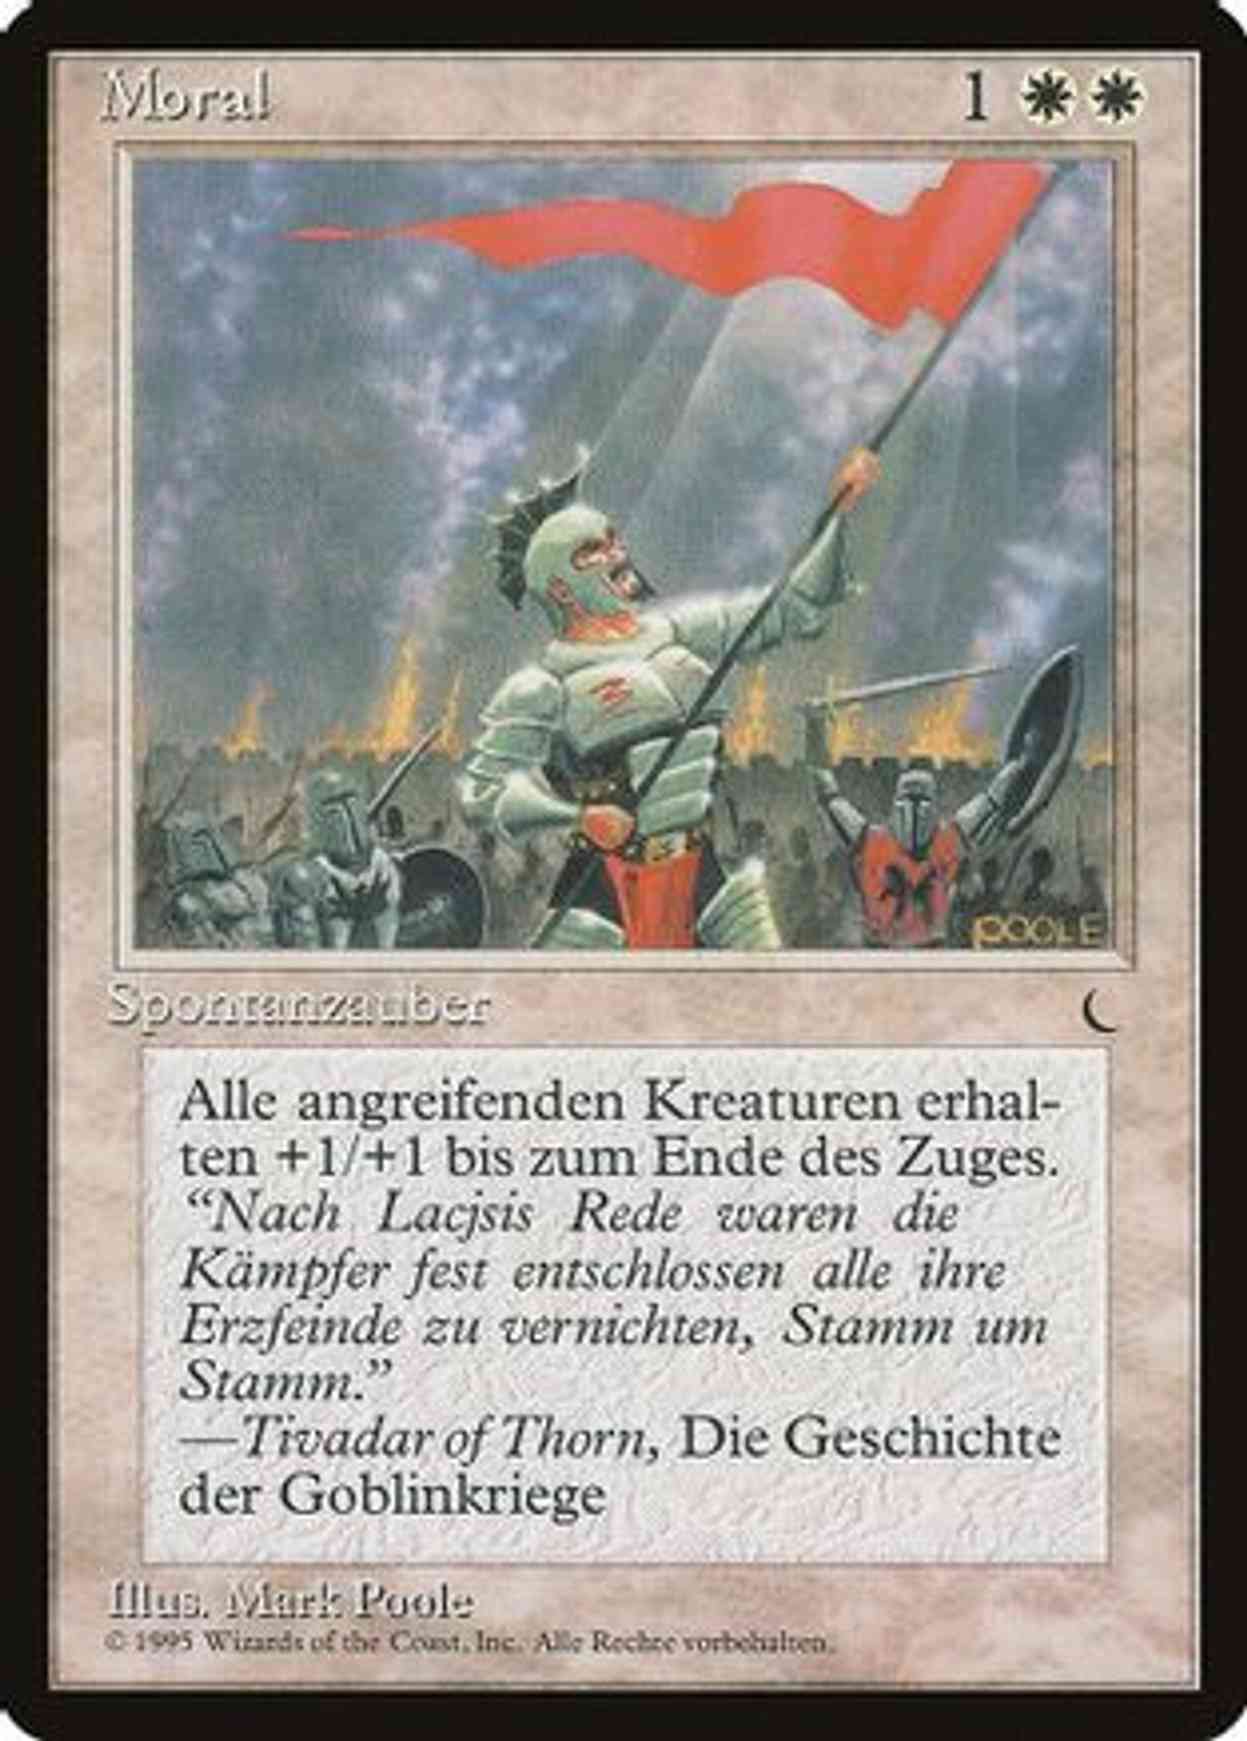 Morale (German) - "Moral" magic card front